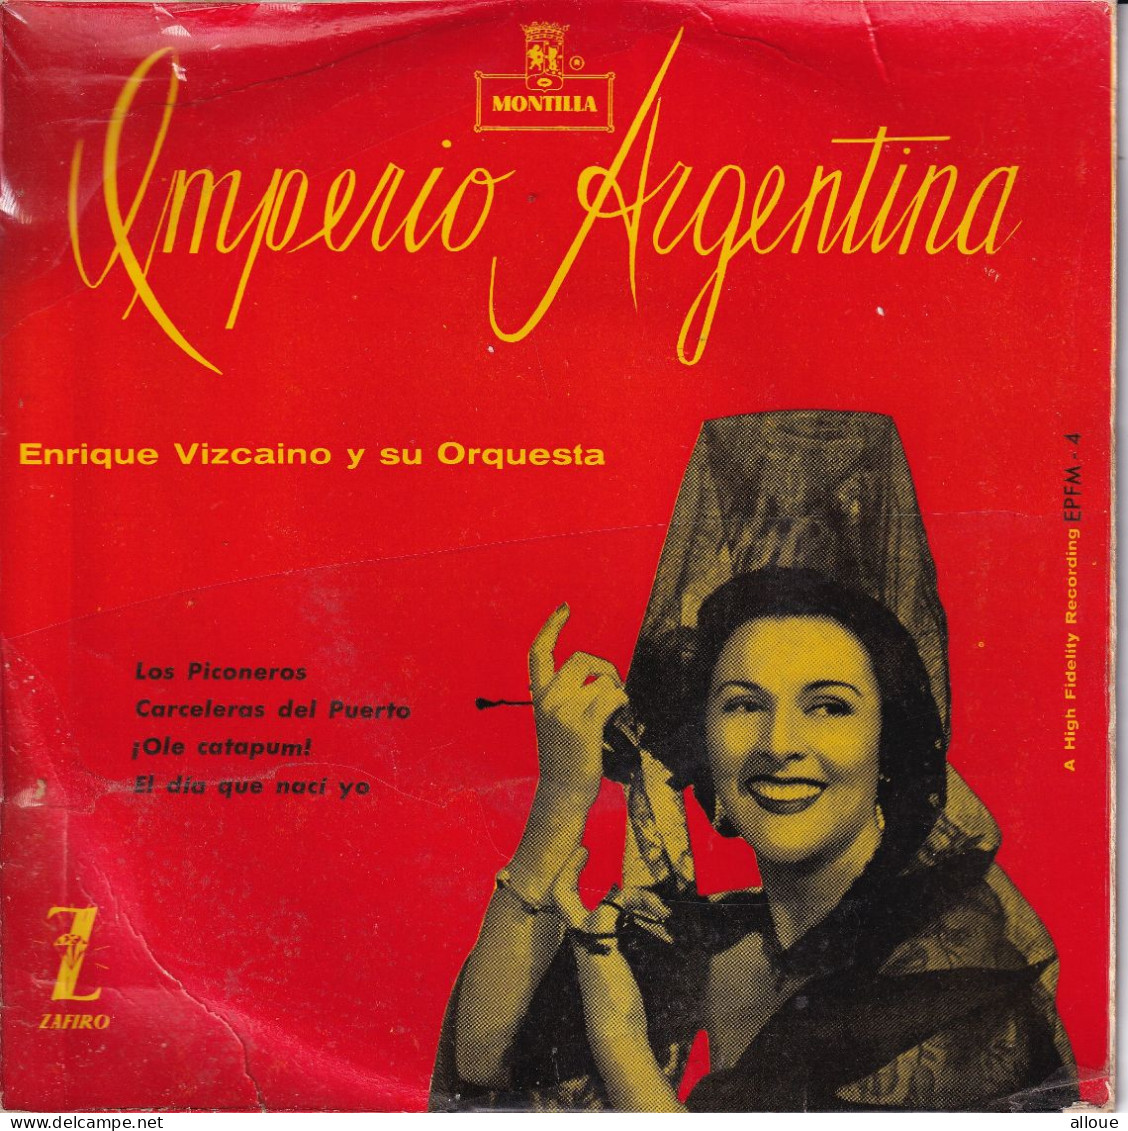 ENRIQUE VIZCAINO Y SU ORQUESTA - SPAIN EP - IMPERIO ARGENTINA - Música Del Mundo